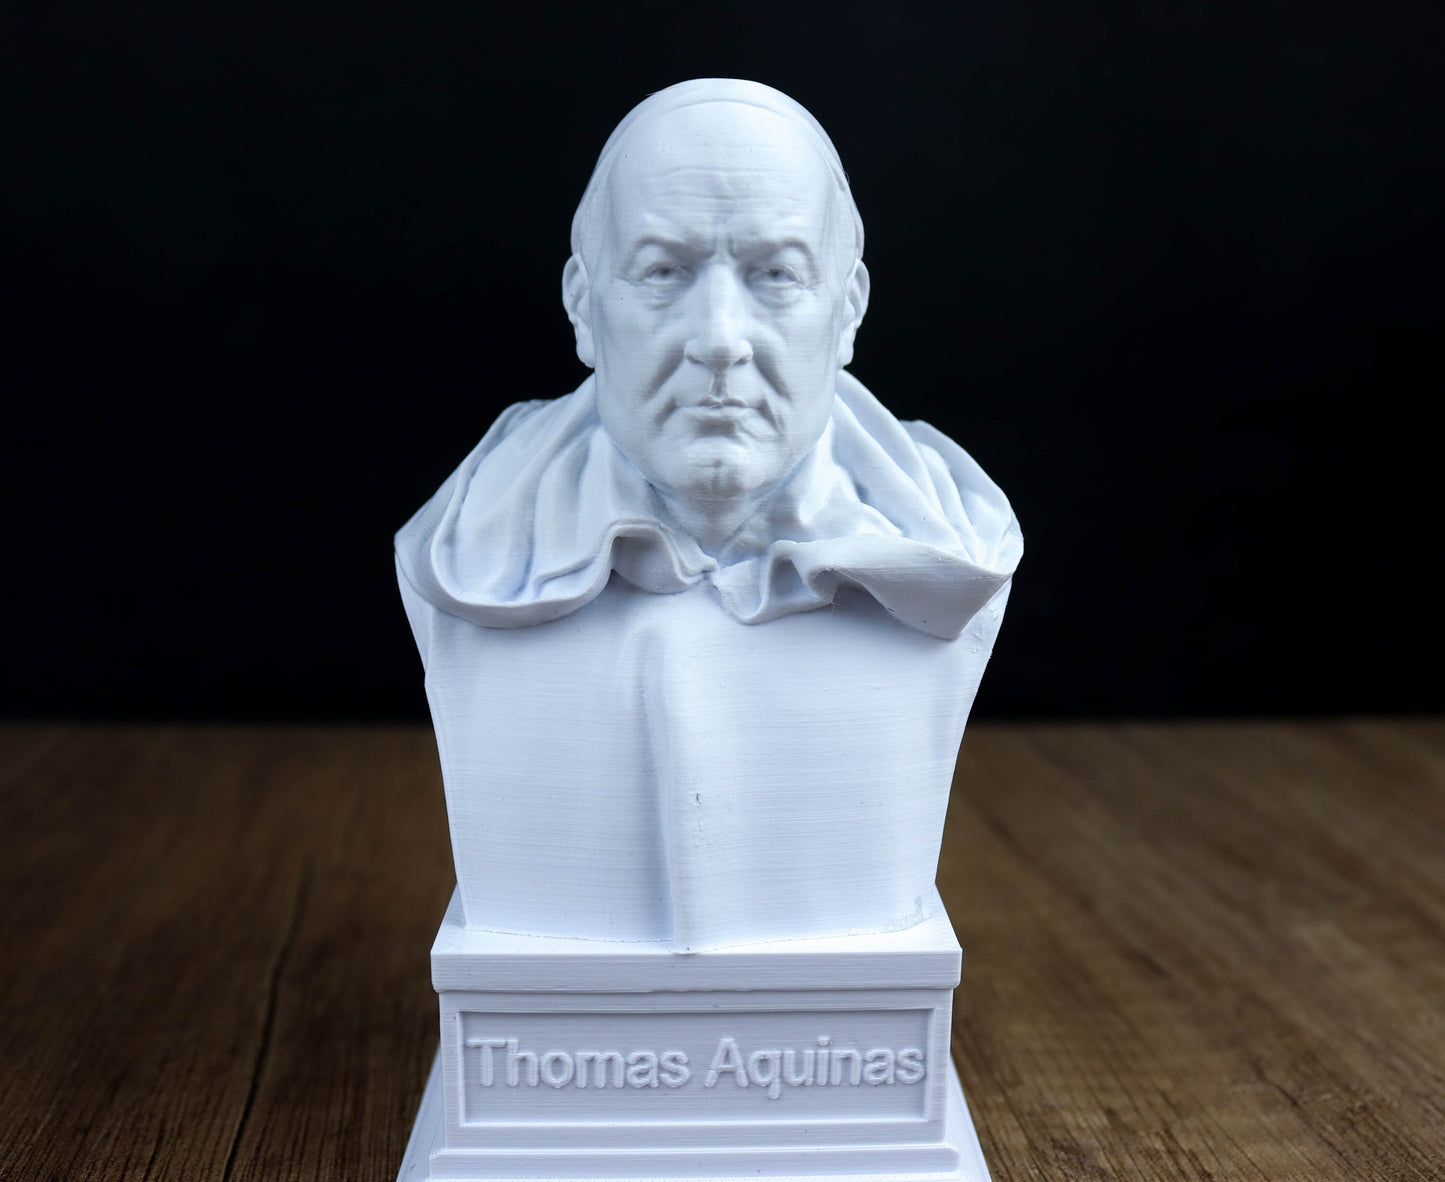 Thomas Aquinas Bust, Catholic Philosopher Sculpture